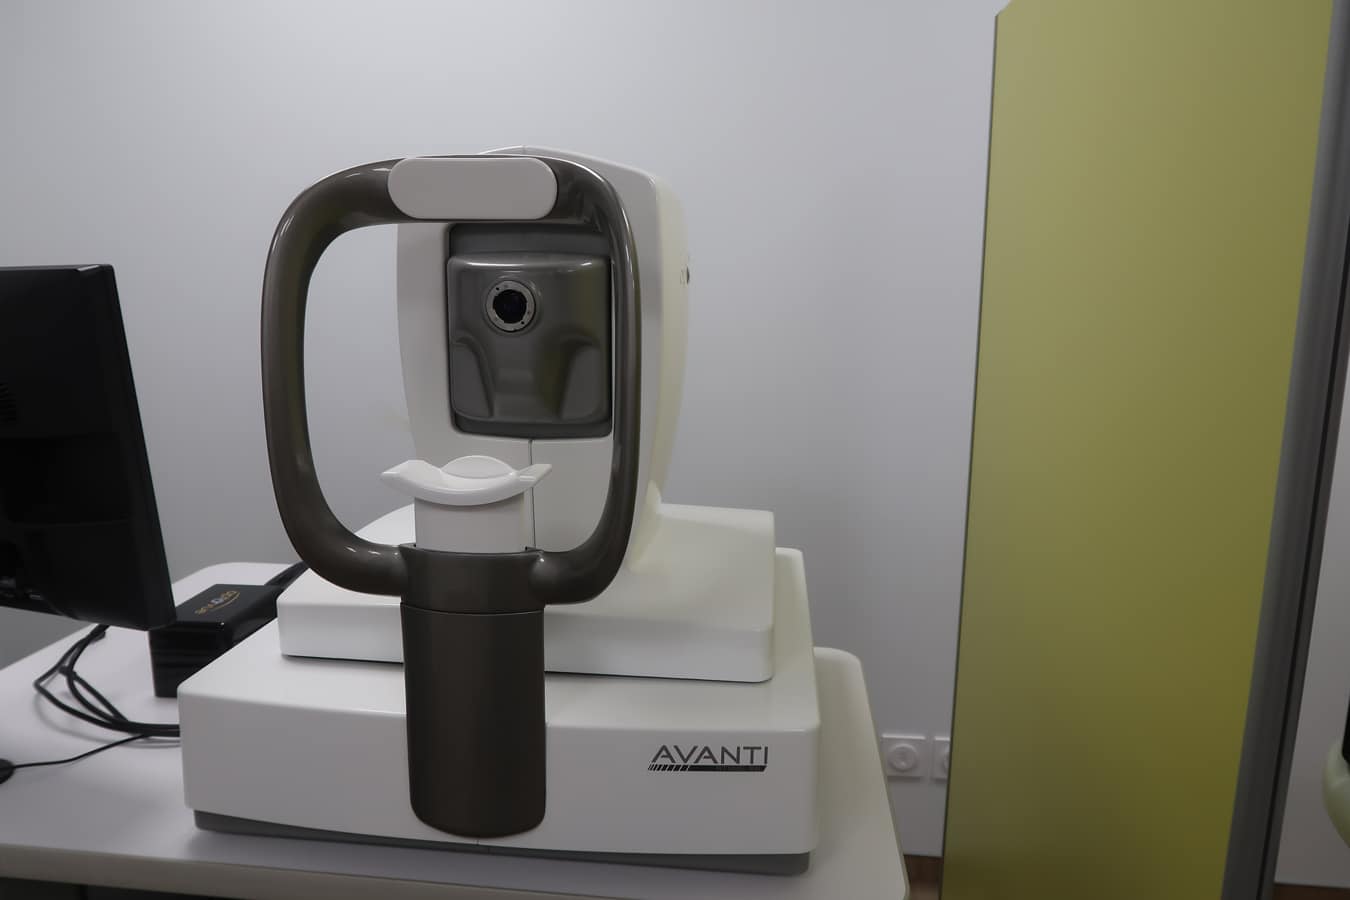 L’OCT : tomographie de cohérence optique